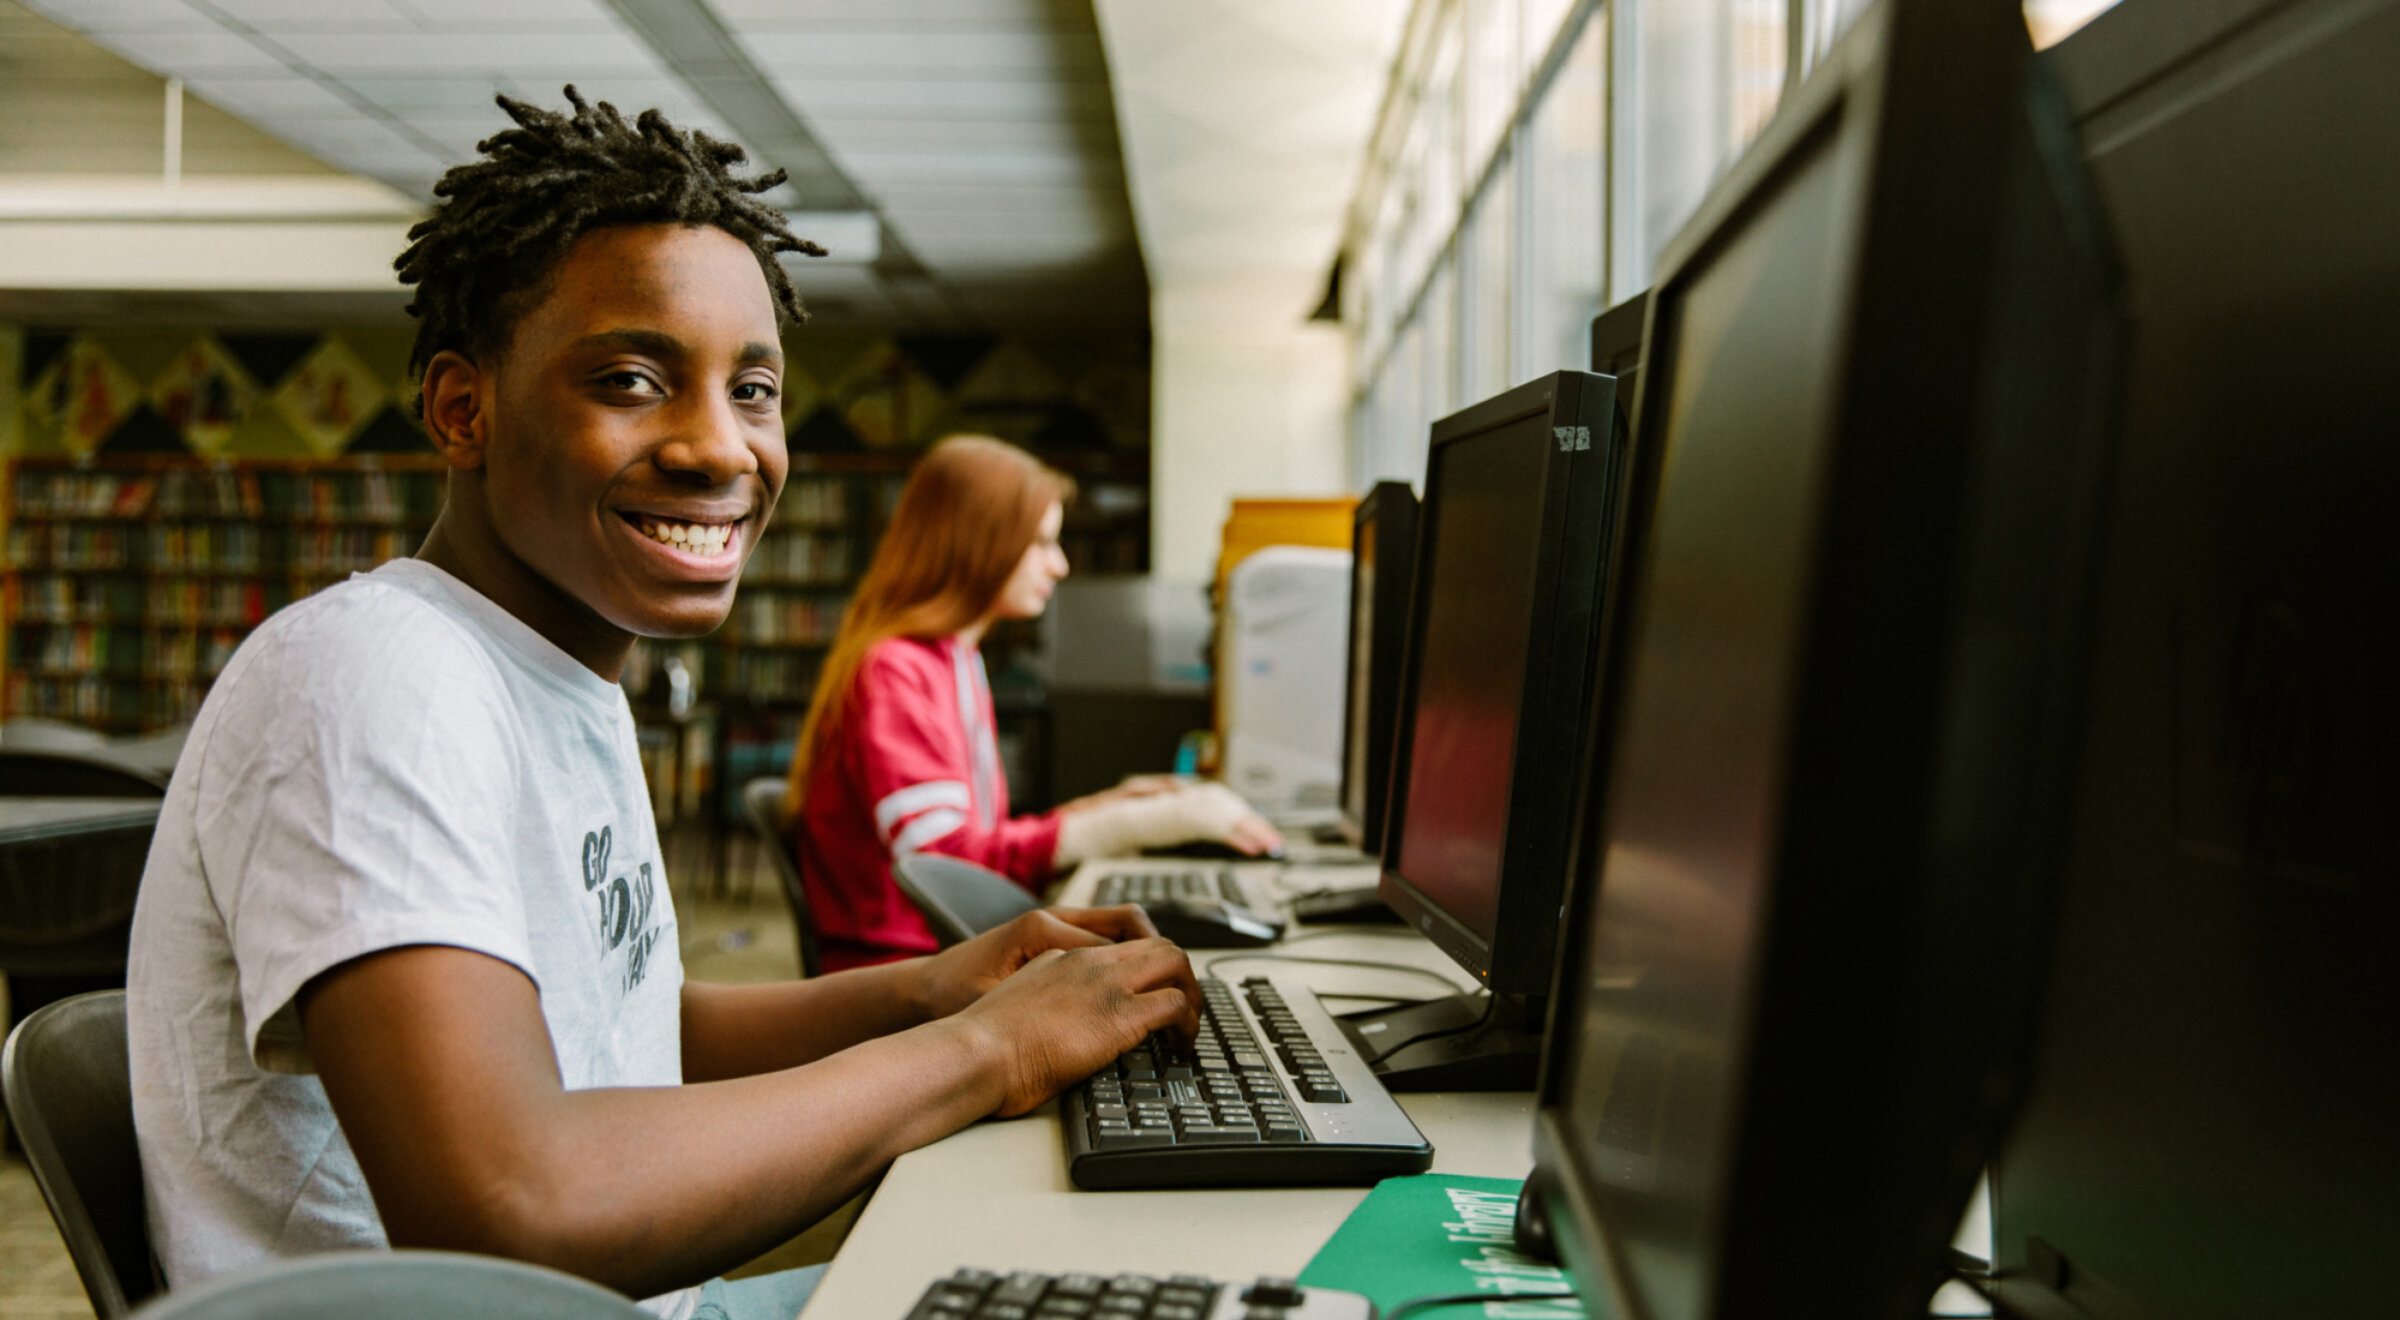 Garçon souriant devant un ordinateur dans une bibliothèque